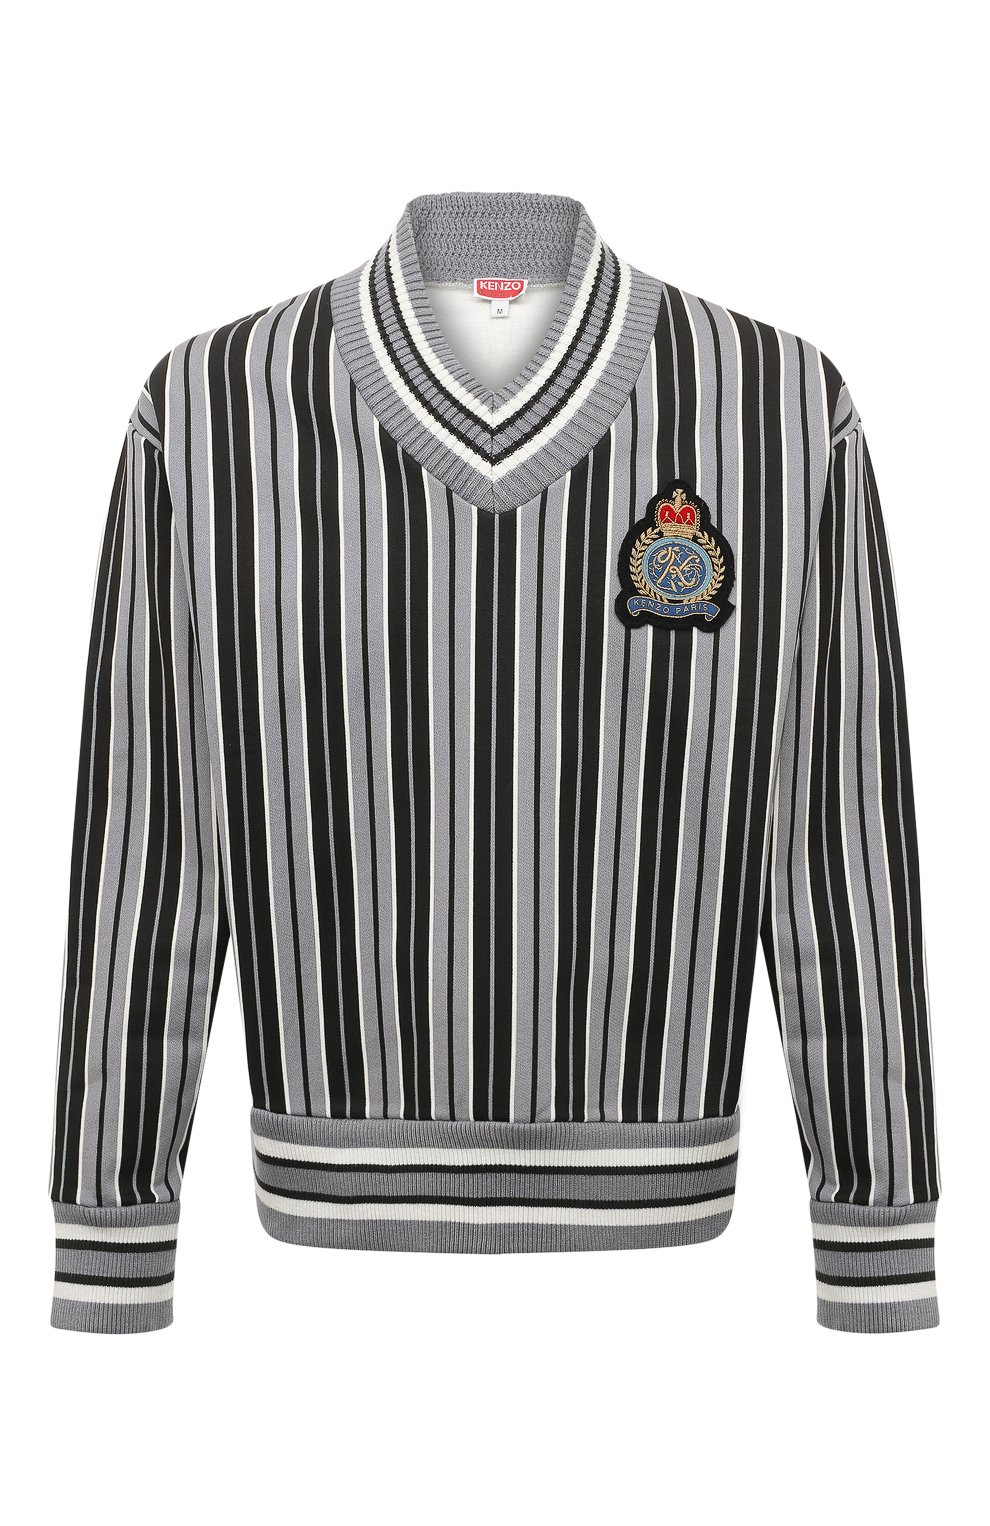 Хлопковый пуловер Kenzo FC65SW4314MC/96, цвет серый, размер 48